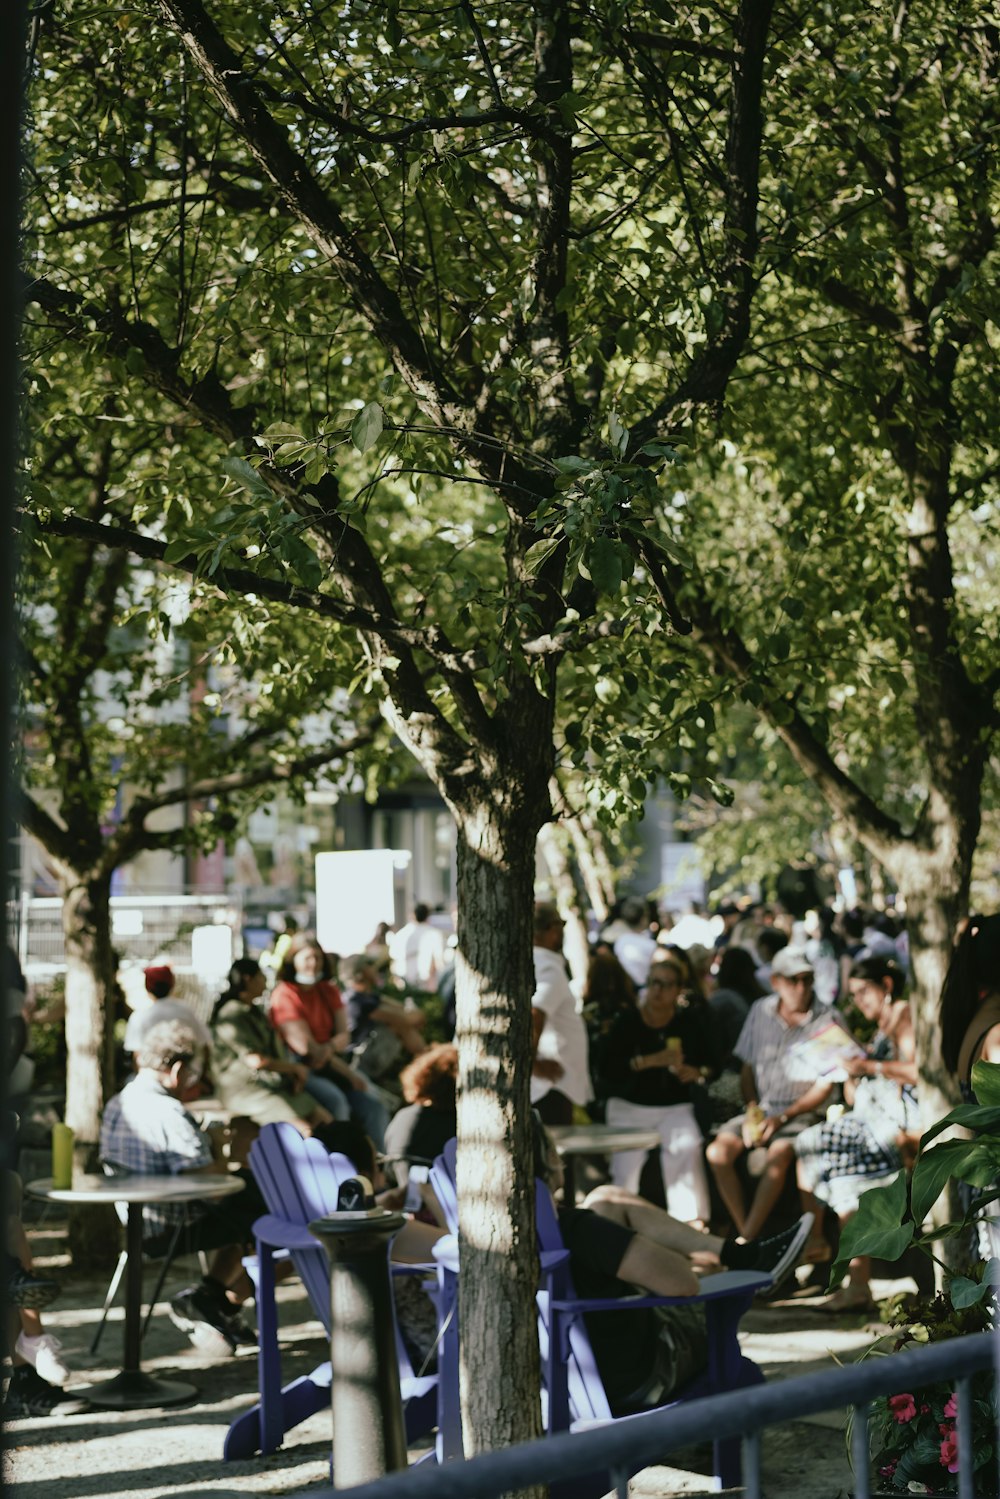 Un grupo de personas sentadas en mesas debajo de un árbol